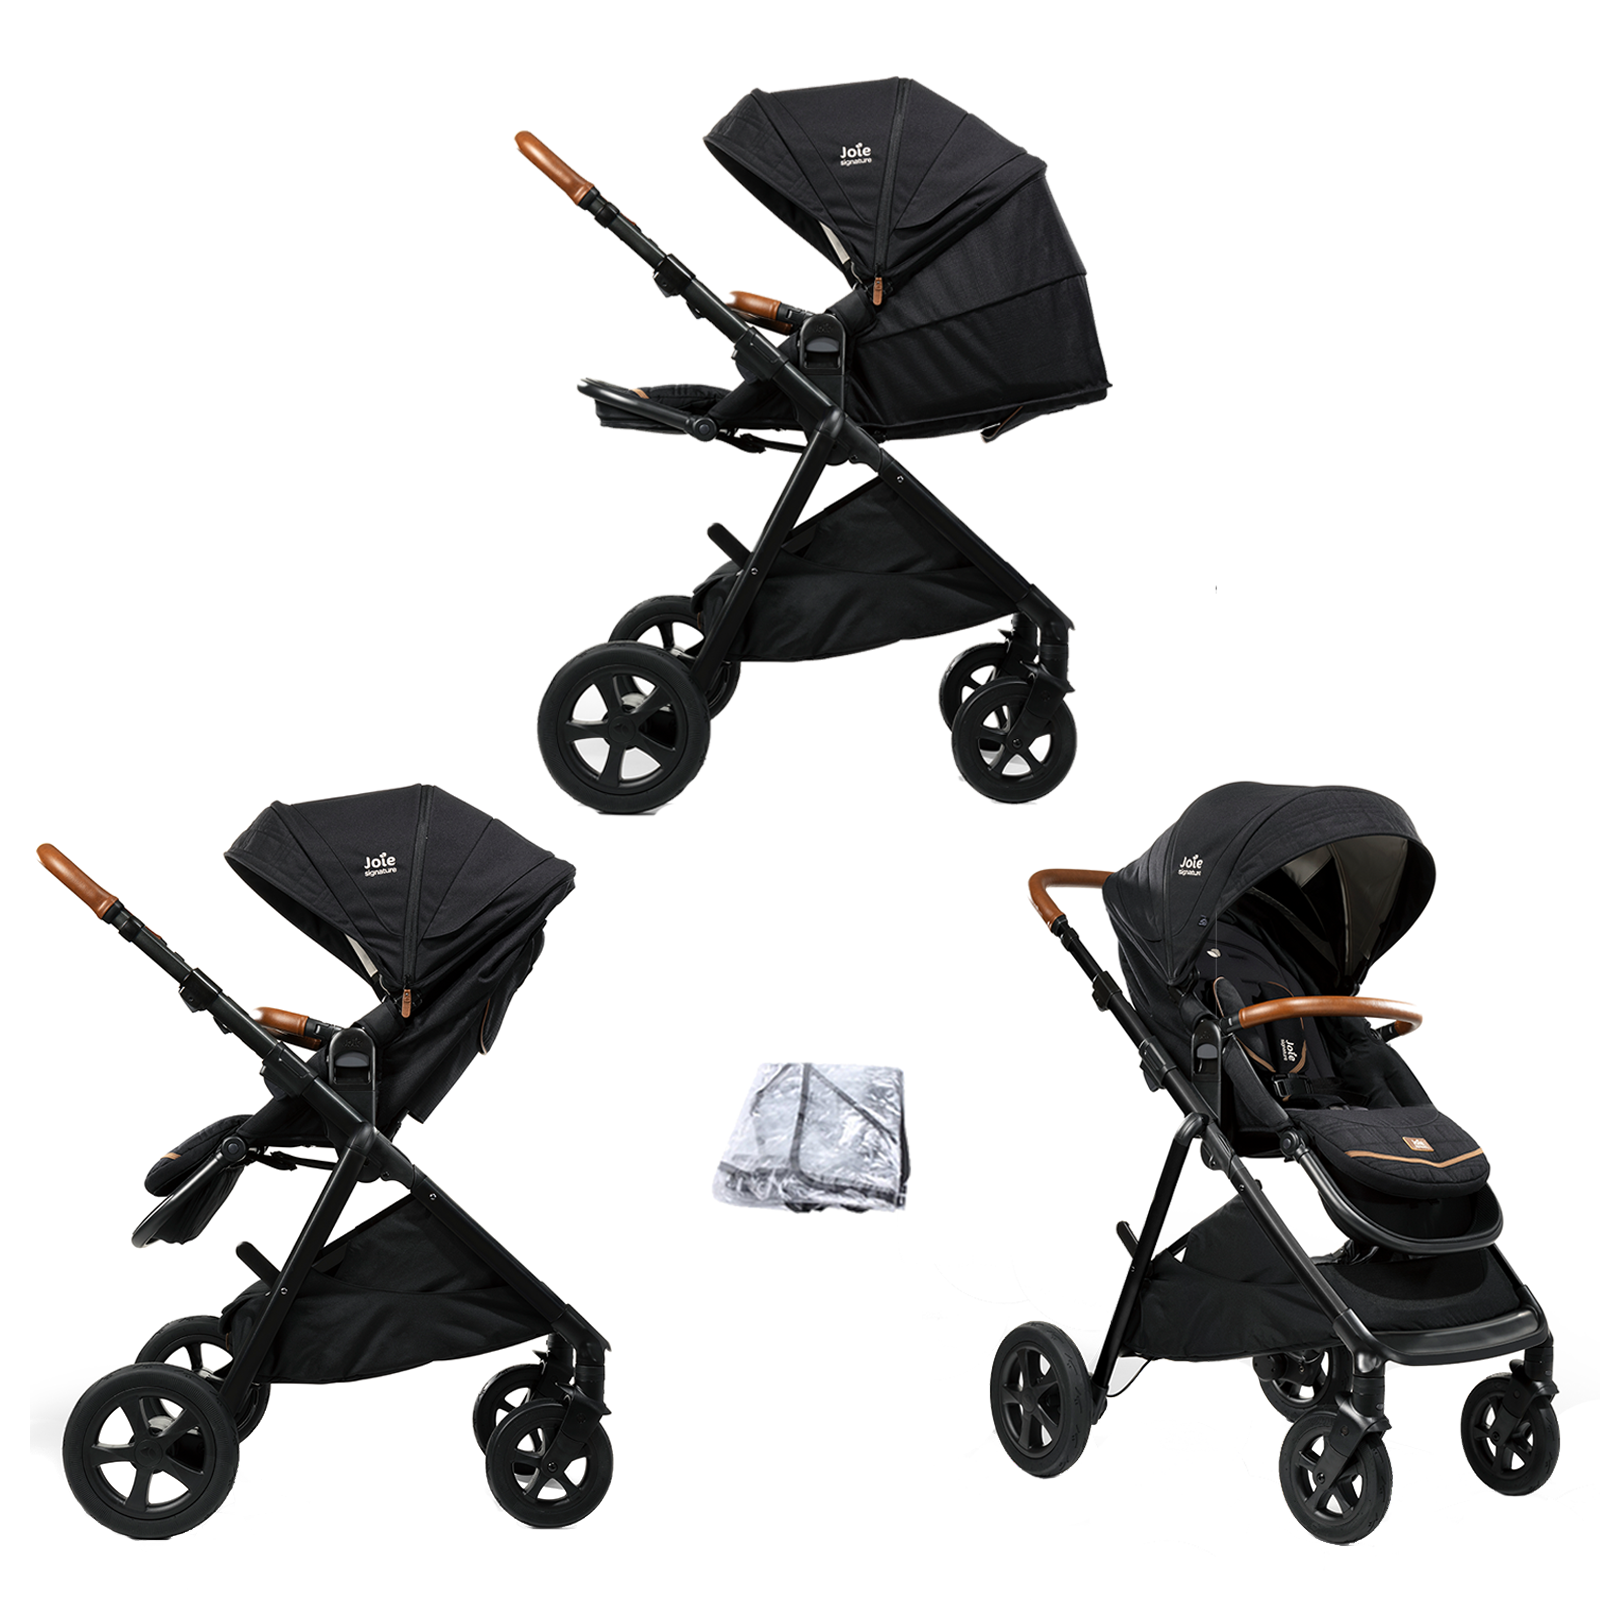 Joie combi stroller set Aeria / Kids-Comfort